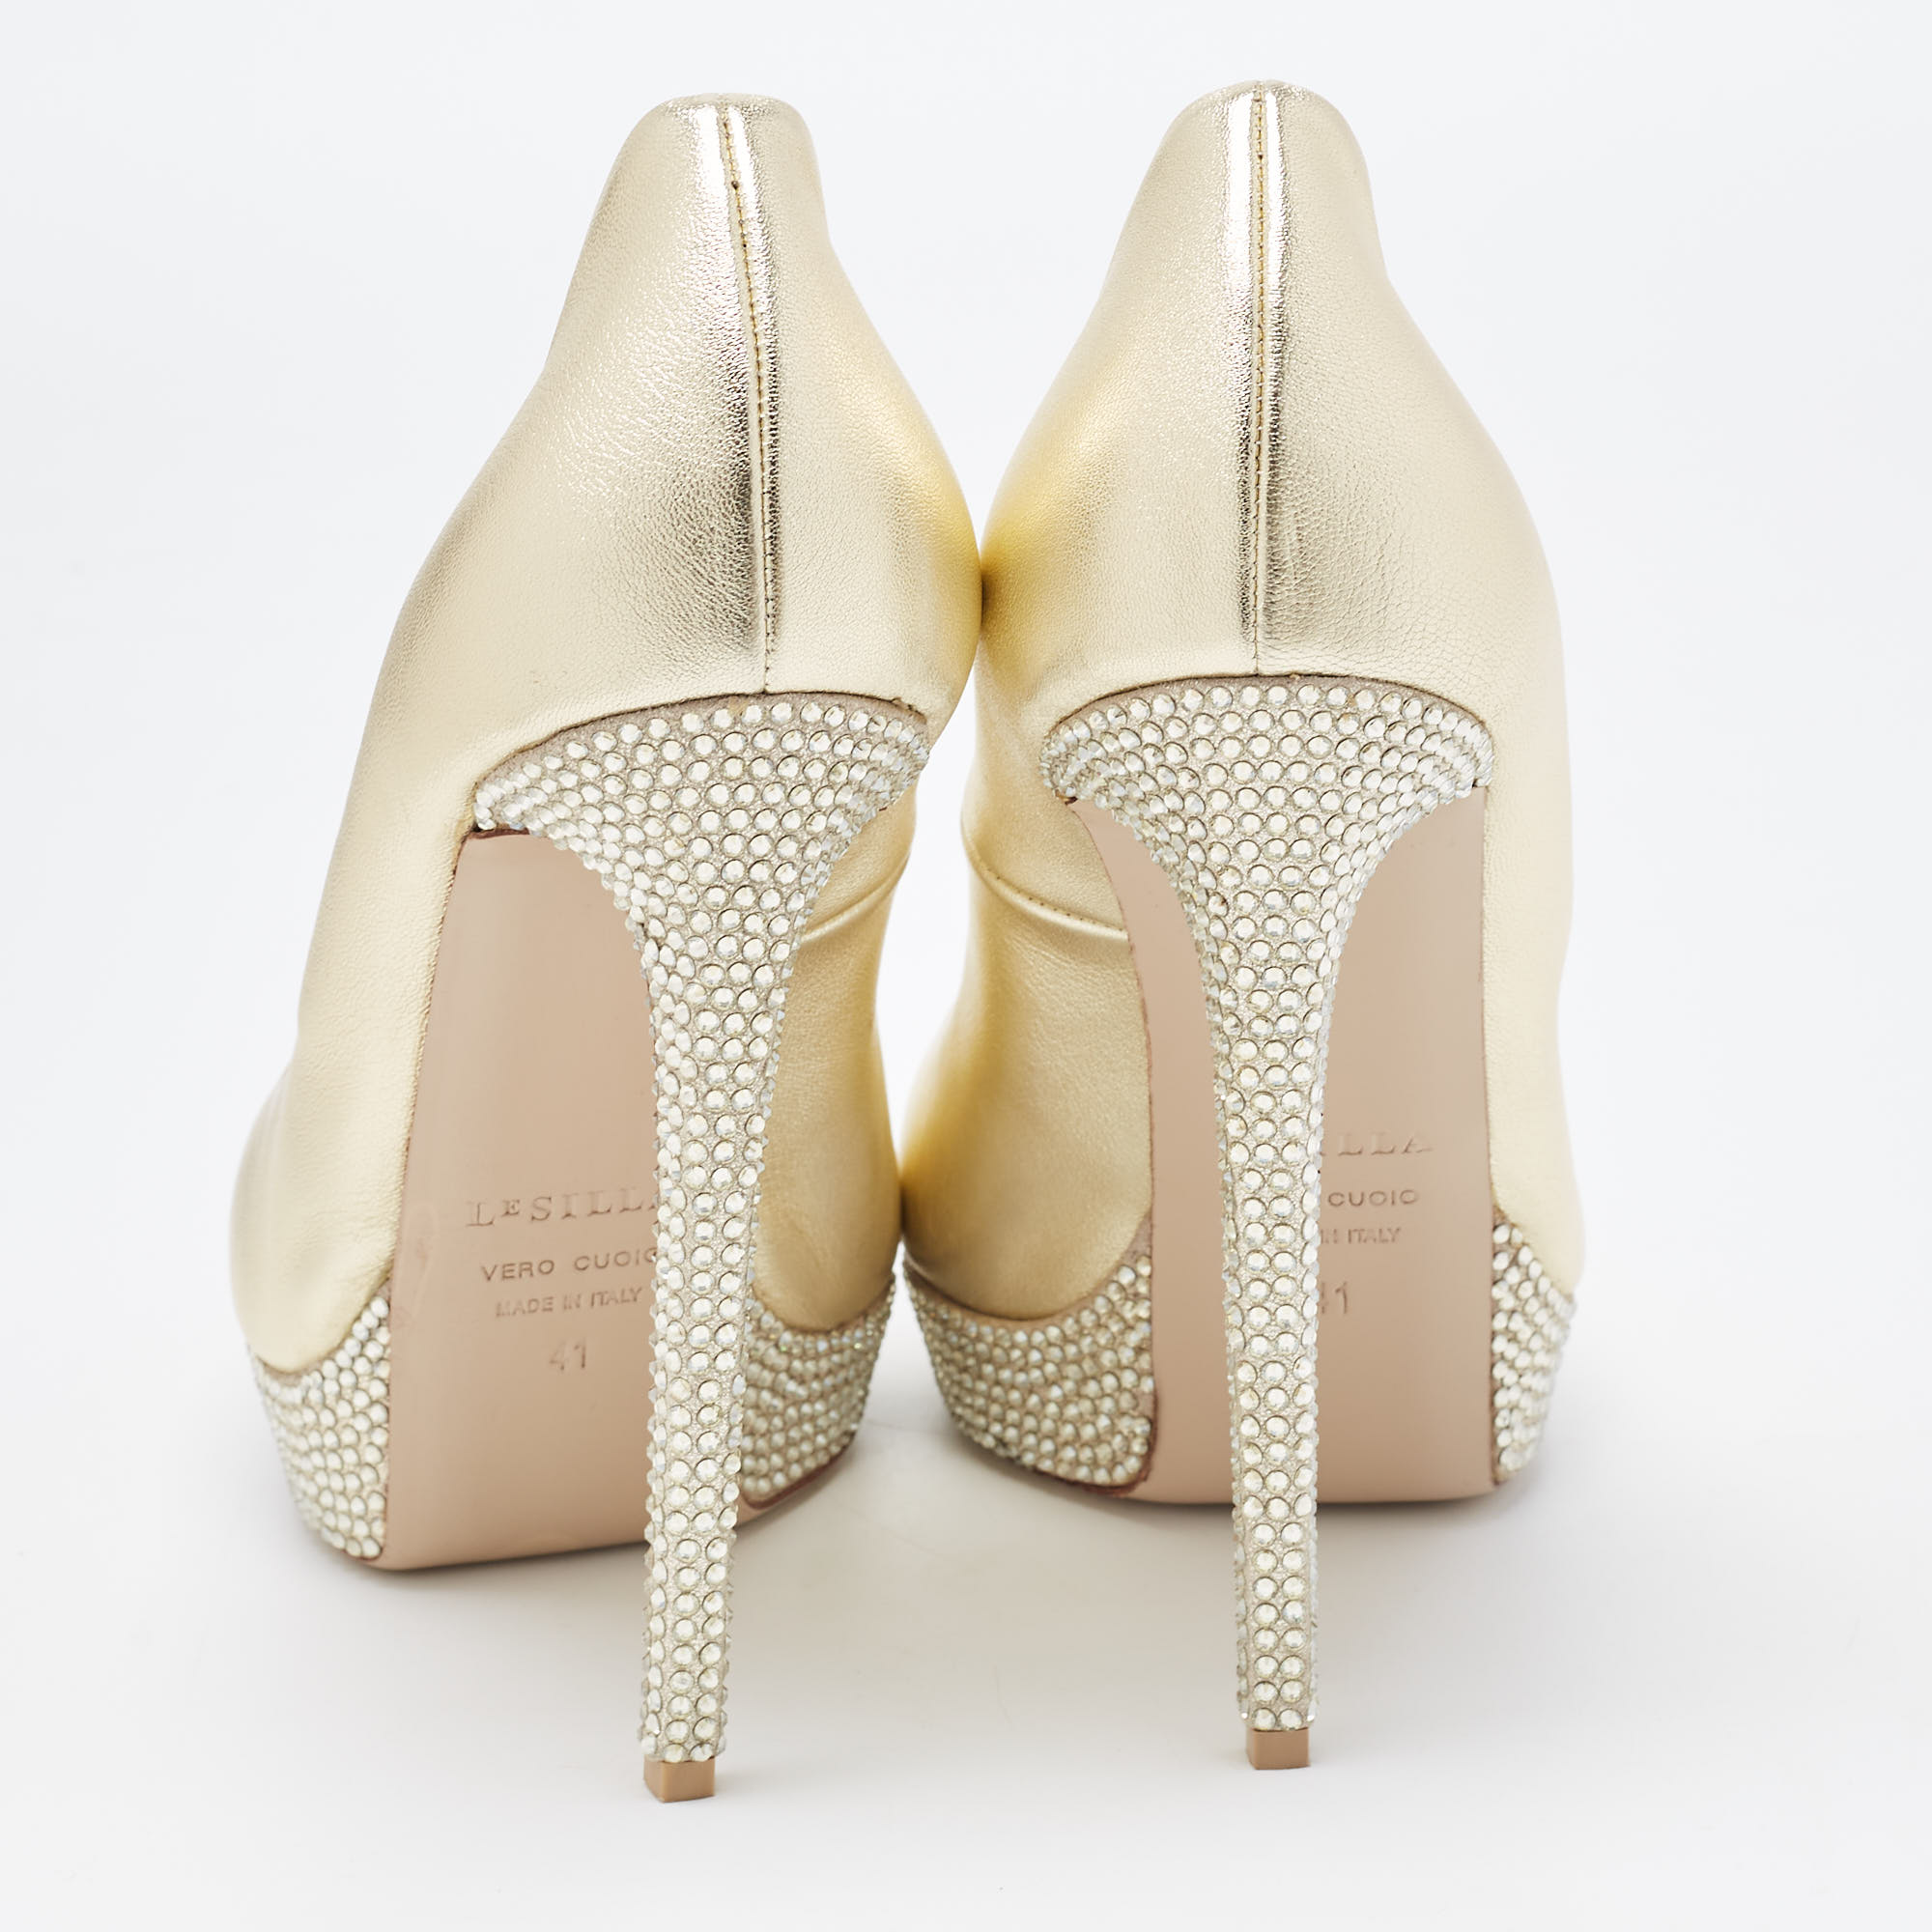 Le Silla Golden Leather Crystal Embellished Platform Peep Toe Pumps Size 41